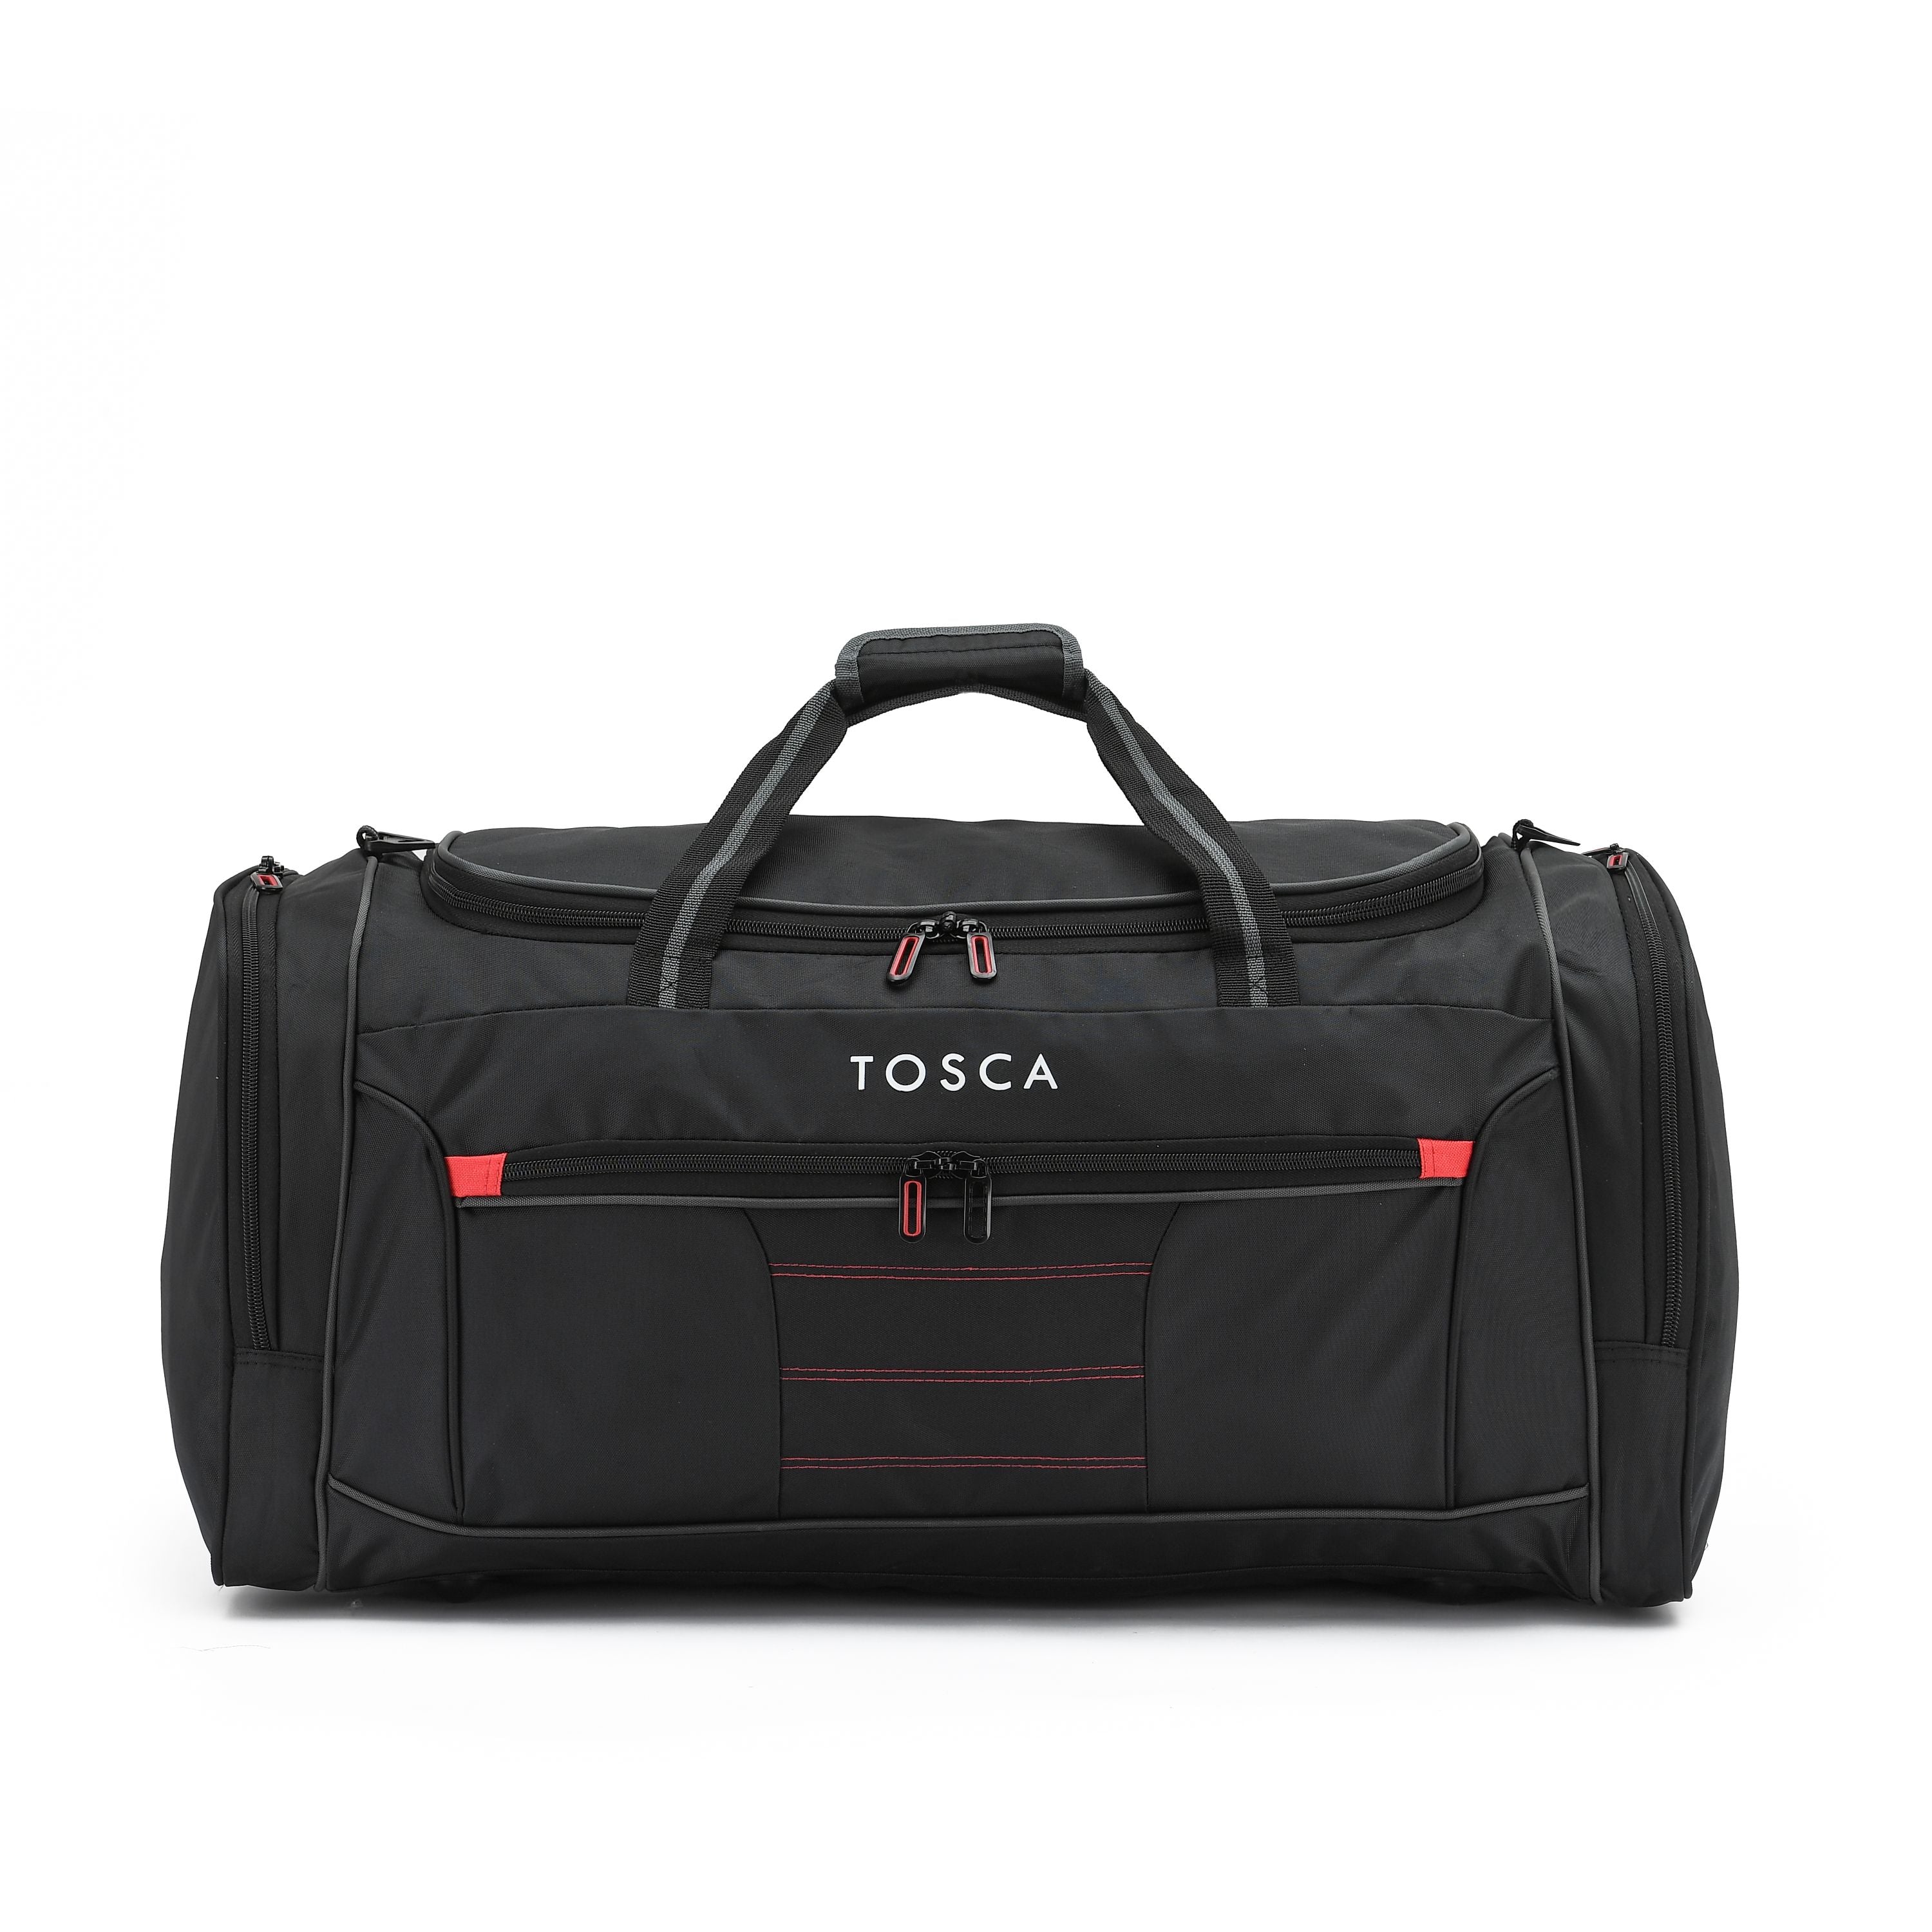 Tosca - TCA794M 70cm Medium Duffle Bag - Black/Red-1